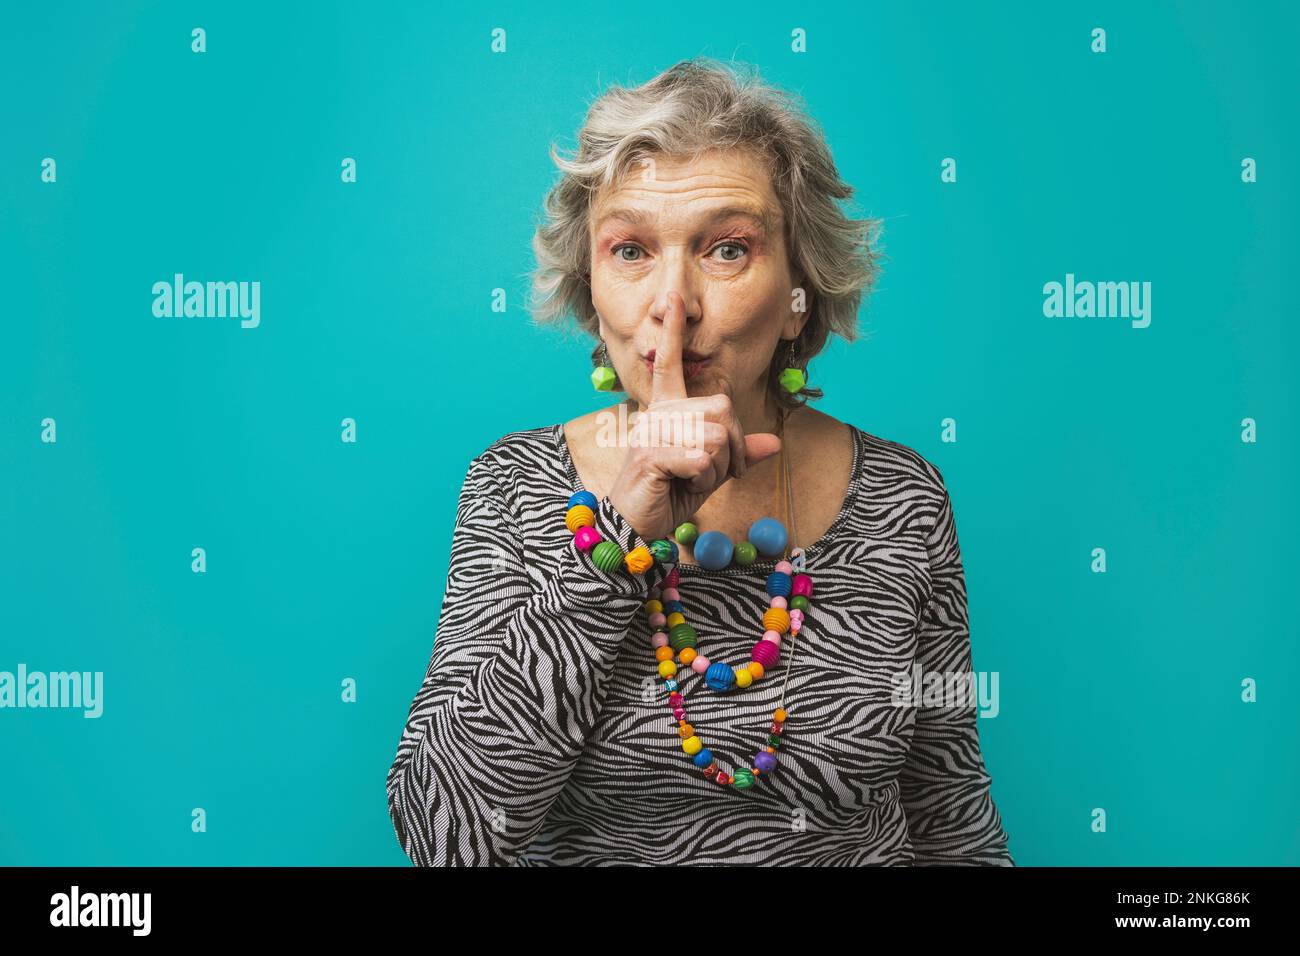 Ältere Frau mit Finger auf den Lippen, die vor einem farbigen Hintergrund steht Stockfoto